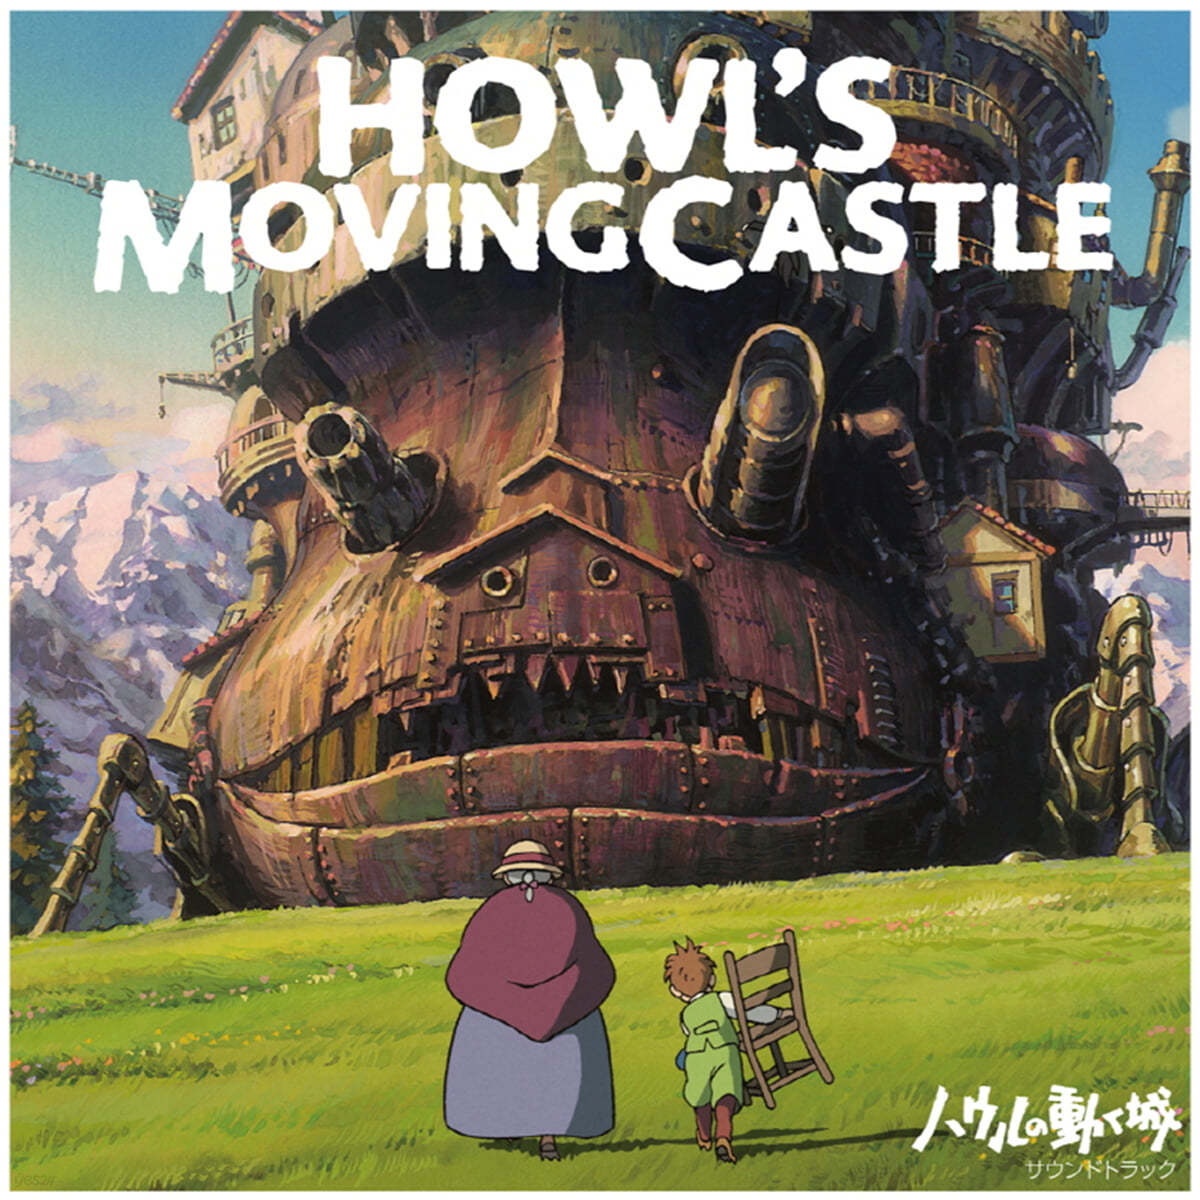 하울의 움직이는 성 영화음악 (Howl's Moving Castle OST by Hisaishi Joe) [투명 오렌지 컬러 2LP] 